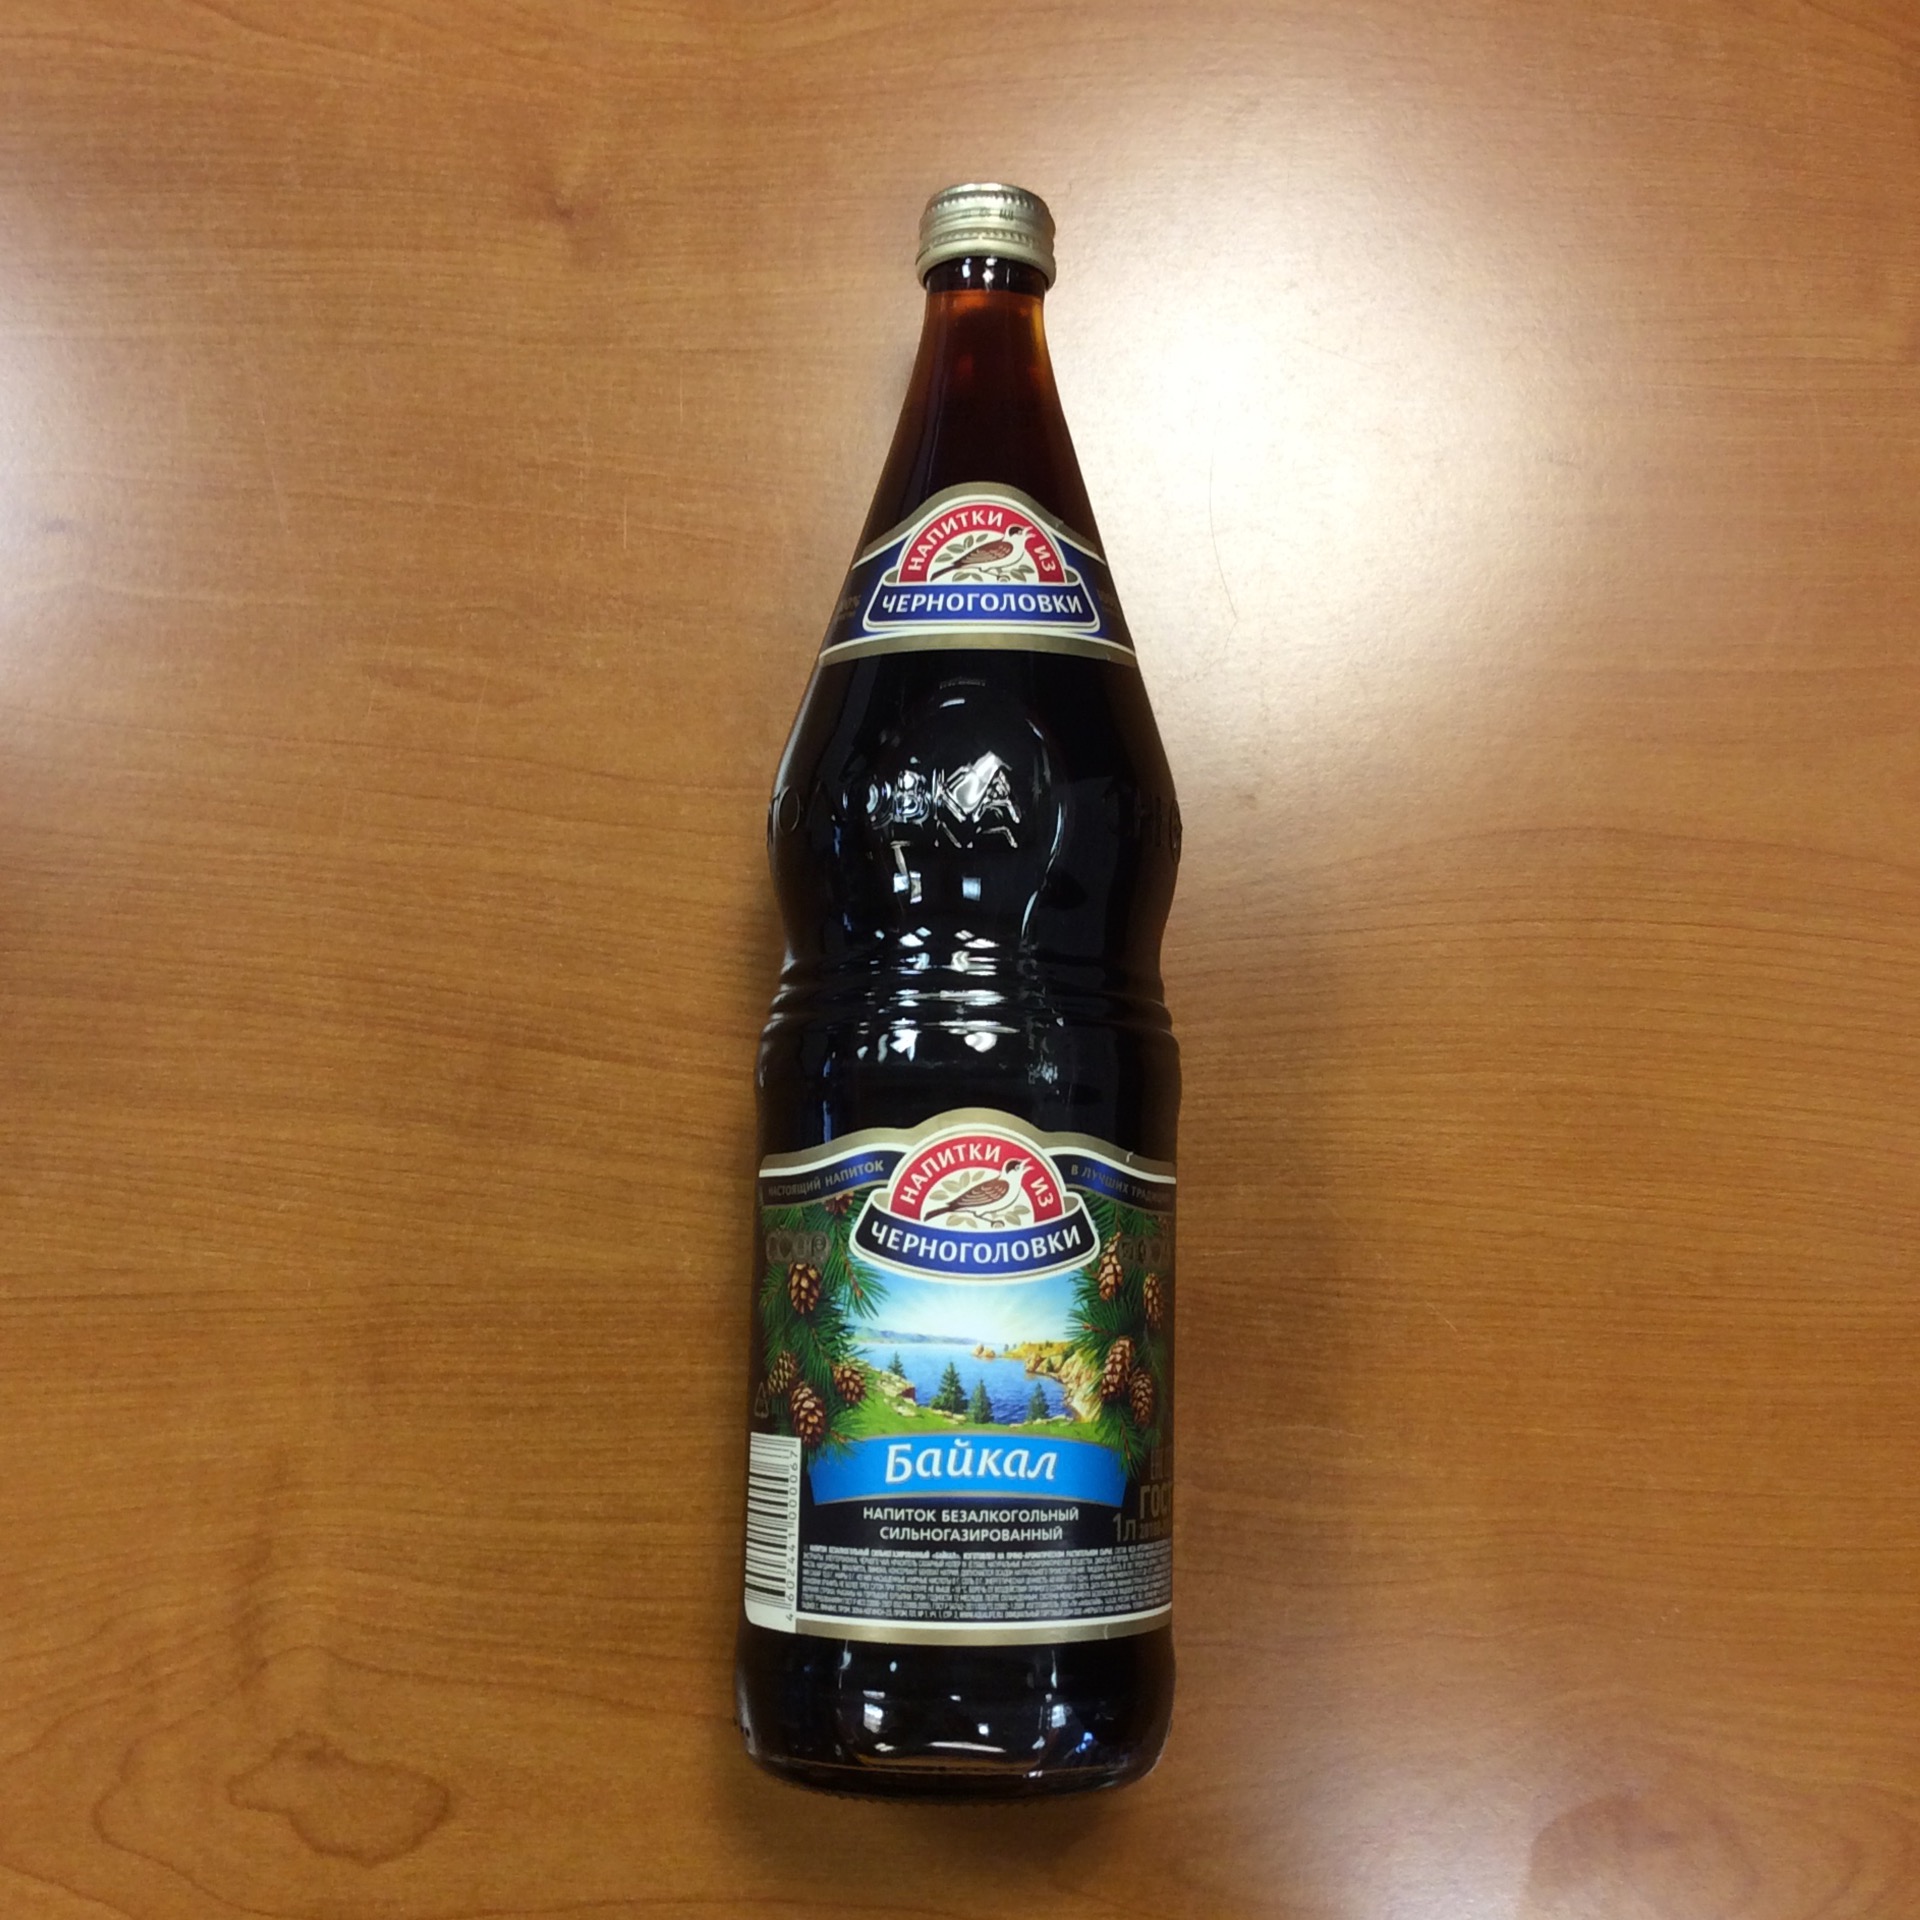 Baikal được xem như "Coca-Cola phiên bản Nga"